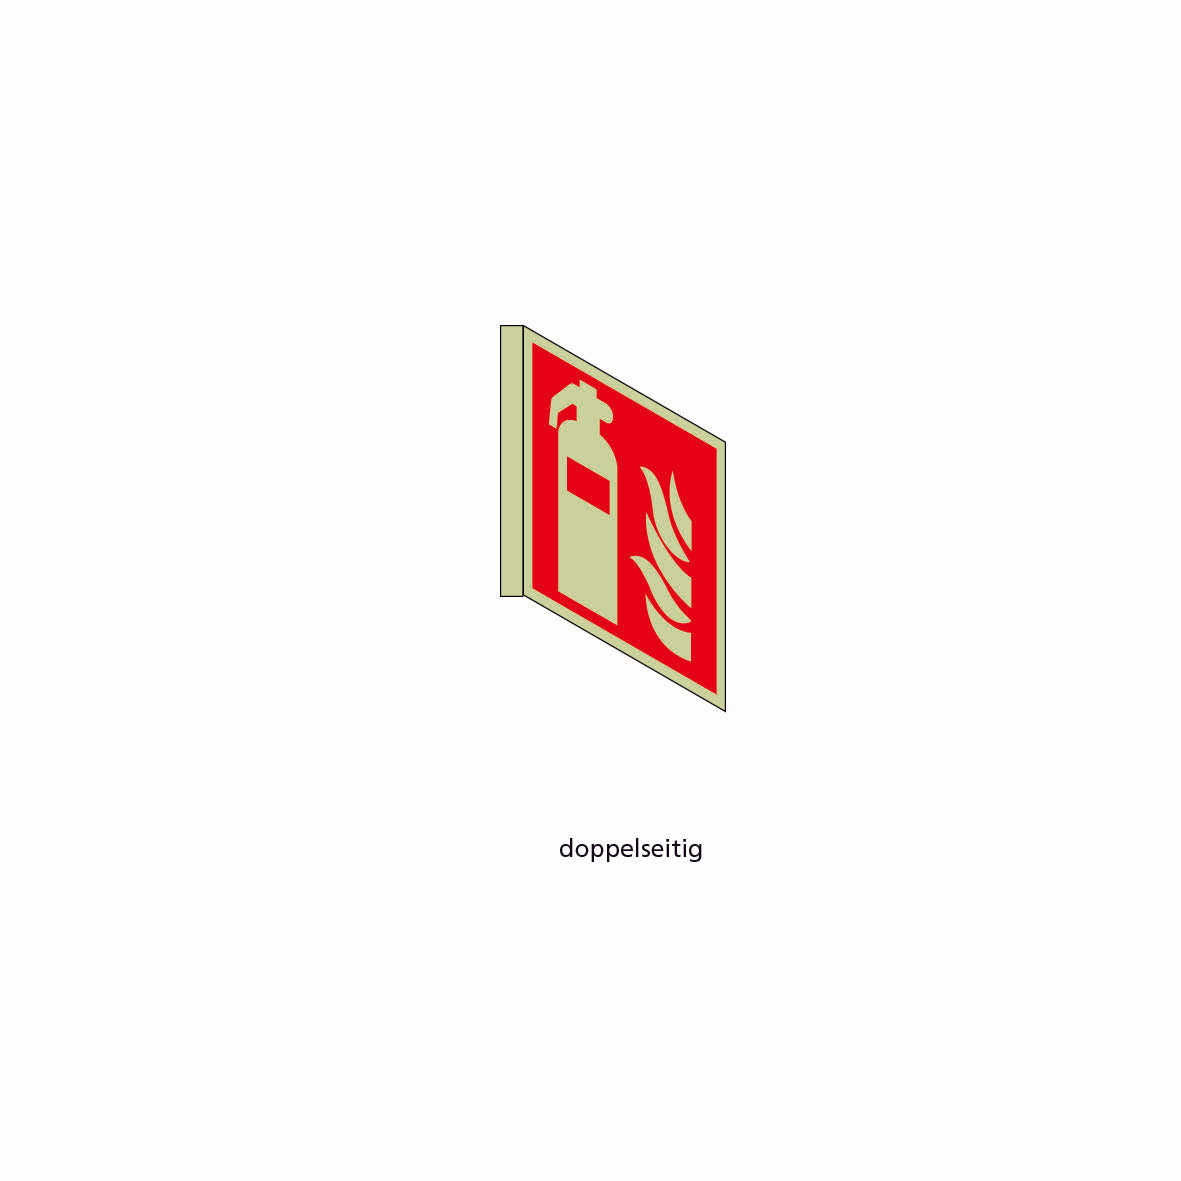 Fahnenschild doppelseitig, Rettungs- und Brandschutzzeichen, nachleuchtend, PK, 200 x 200 mm, gemäss Logobibliothek